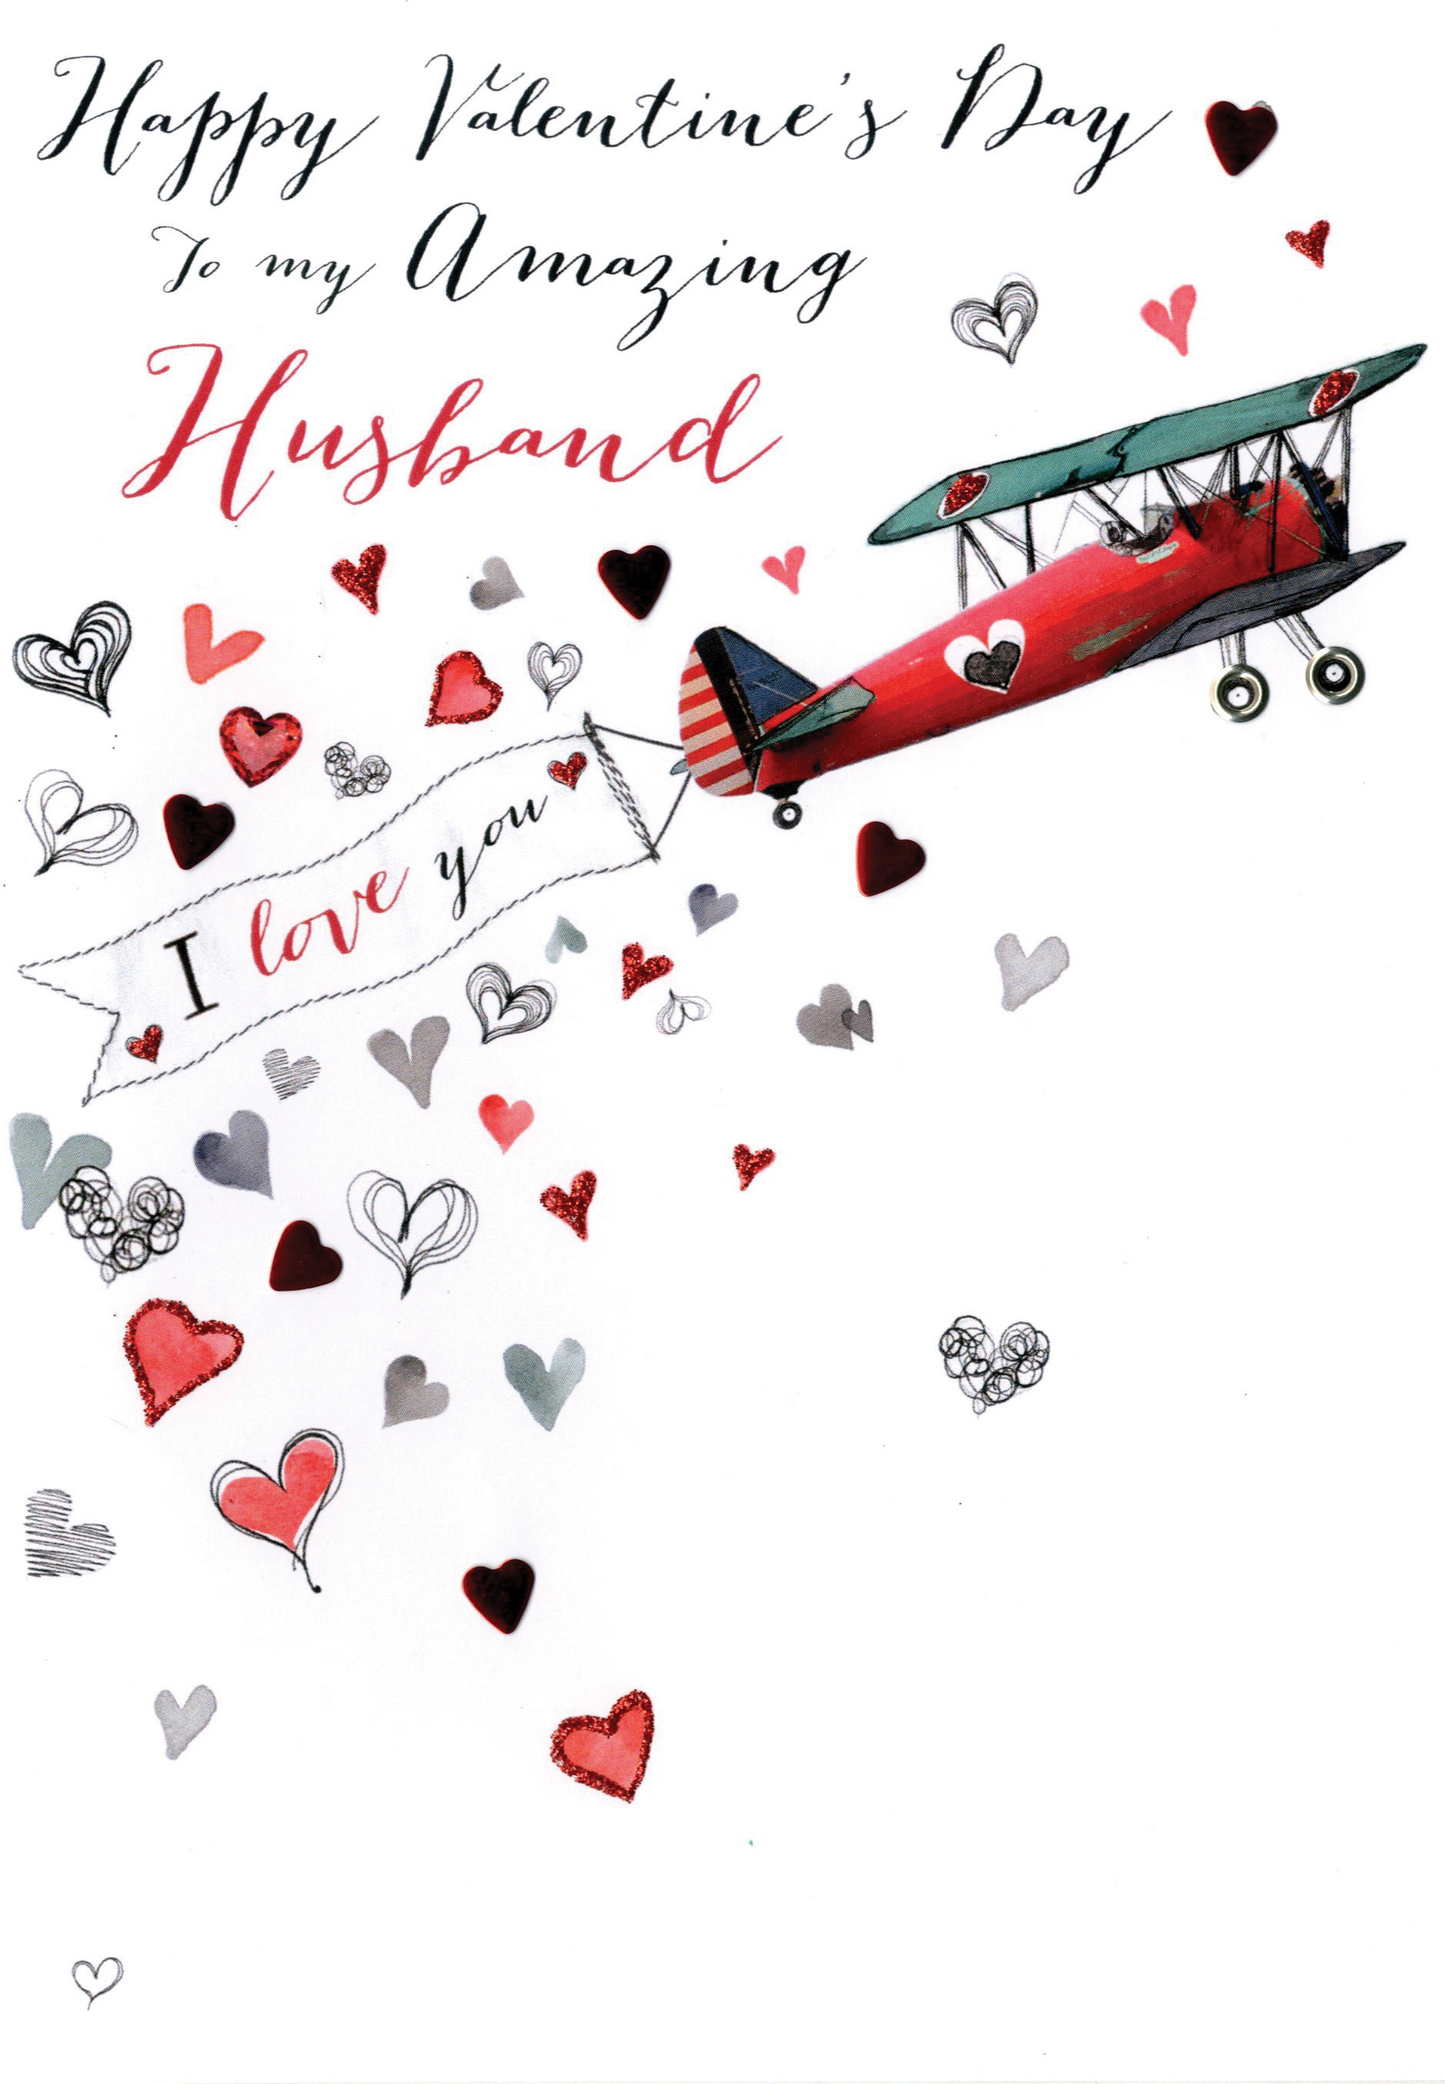 Husband Embellished Joie De Vivre Valentine's Greeting Card